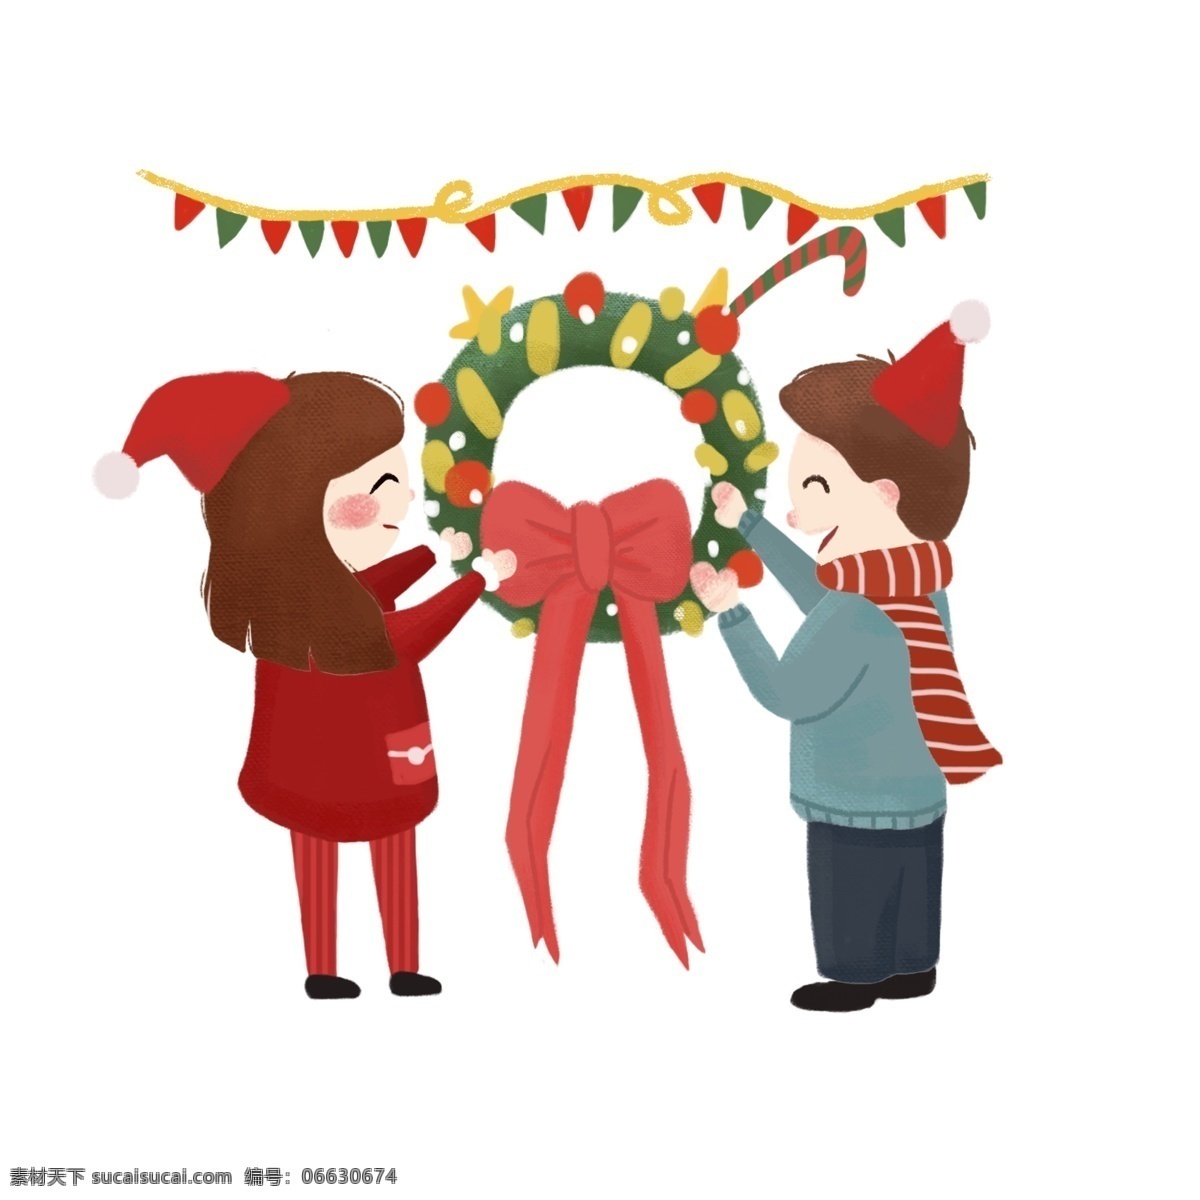 圣诞节 大家 一起 欢庆 圣诞 卡通 手绘 彩旗 花环 男孩 女孩 红色的蝴蝶结 圣诞帽子 围巾 绿色 帮助 灰色